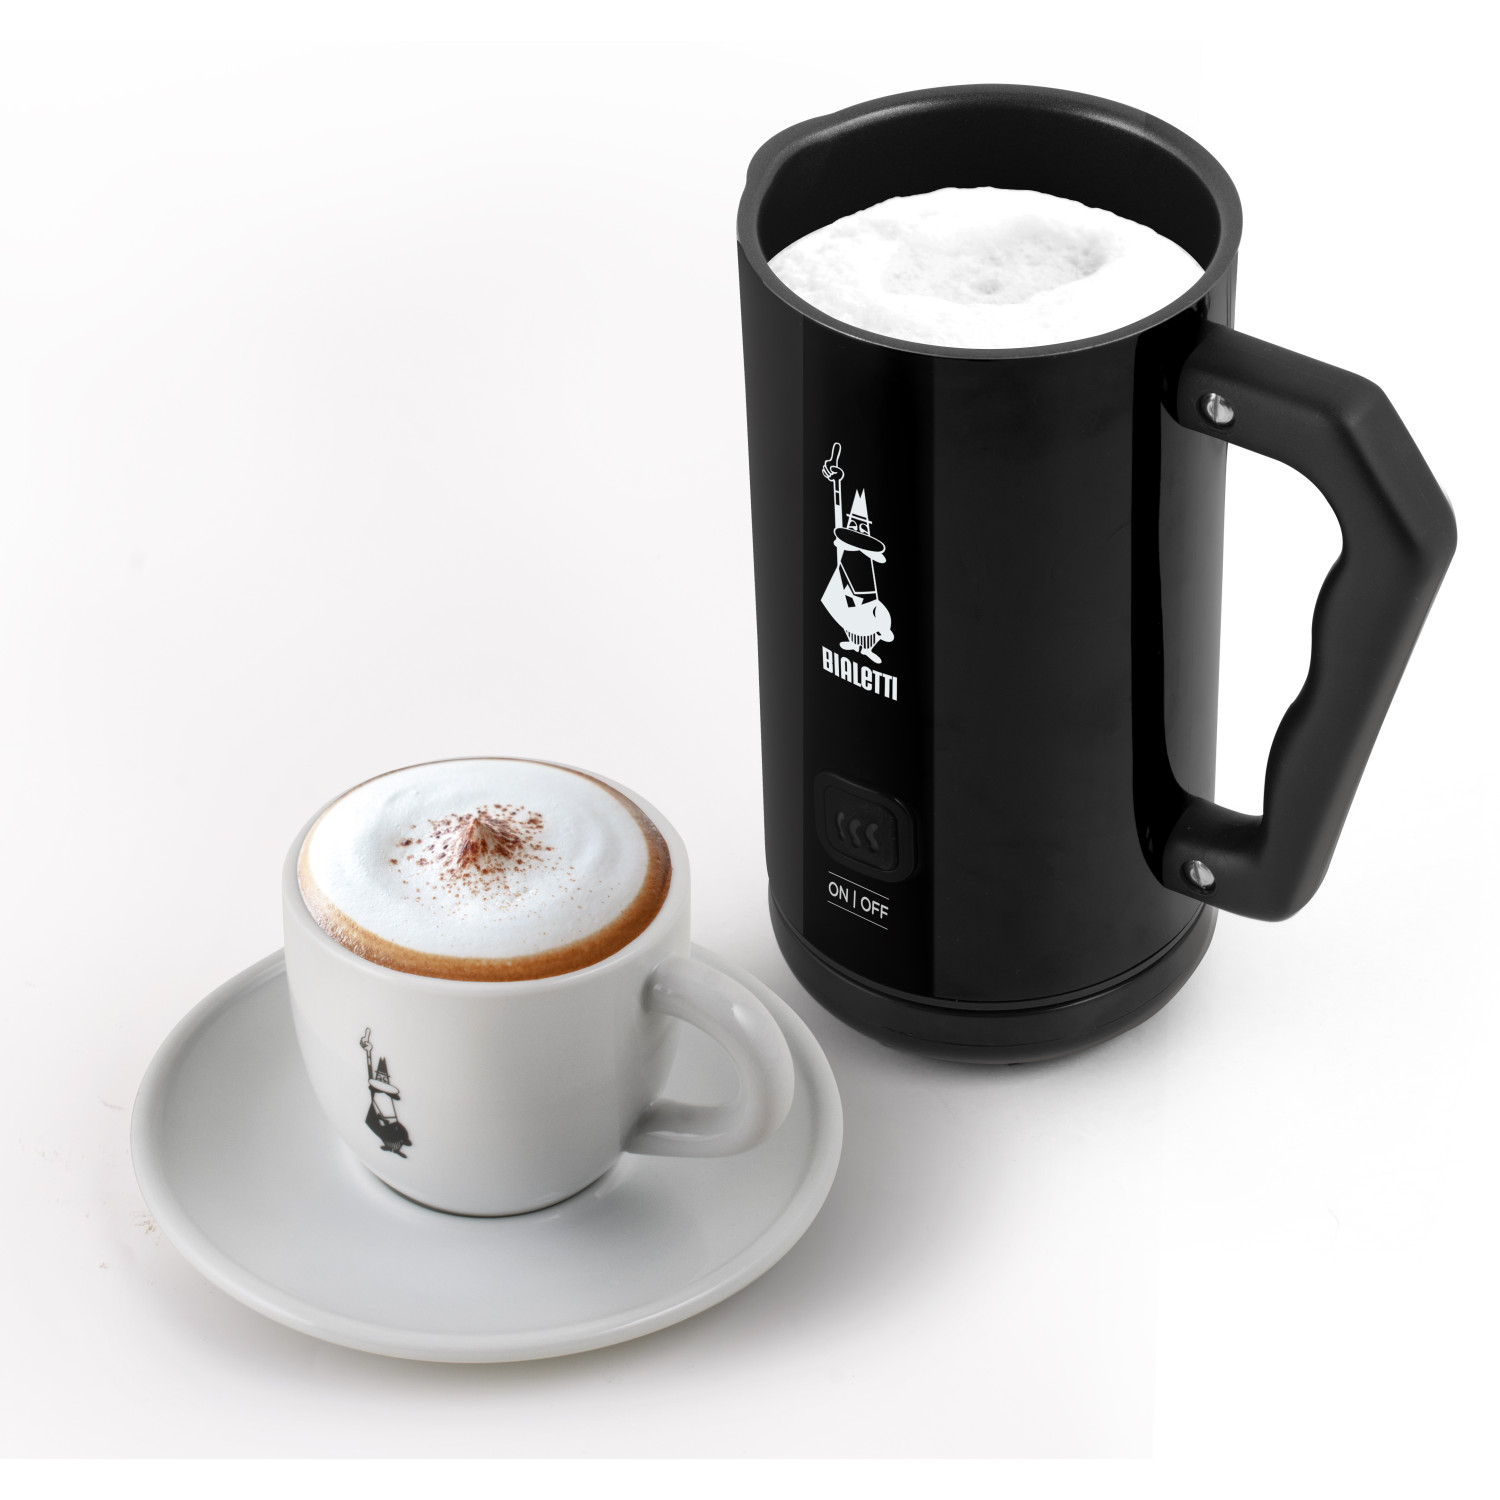 Elettric BIALETTI Espressokocher Frother MK02 Milk Schwarz